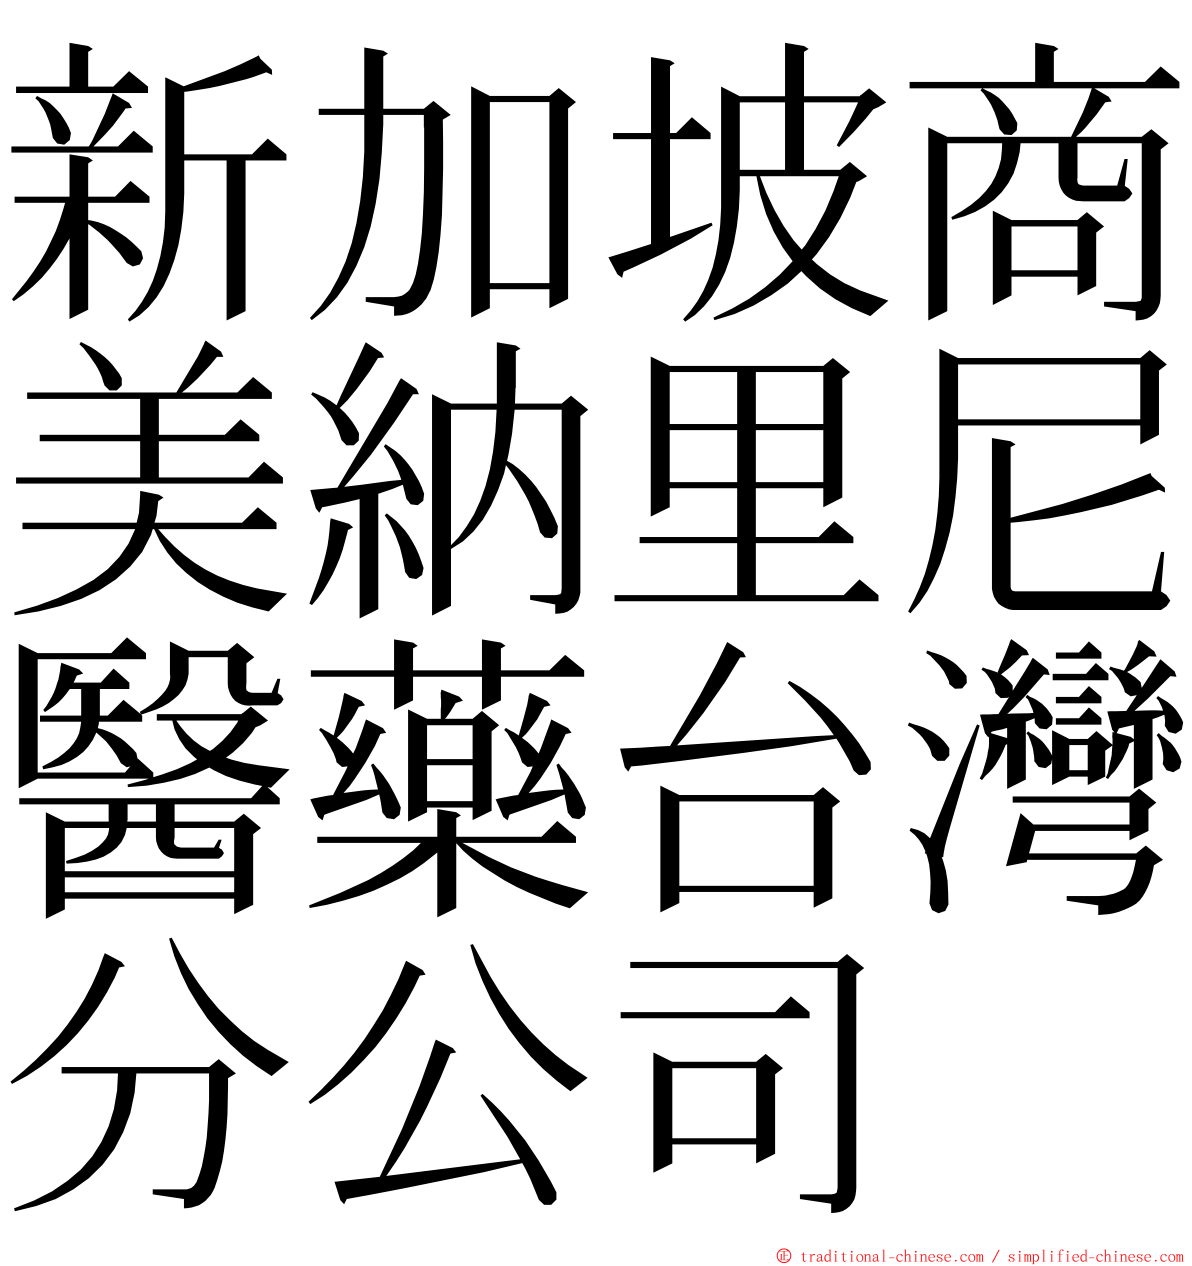 新加坡商美納里尼醫藥台灣分公司 ming font